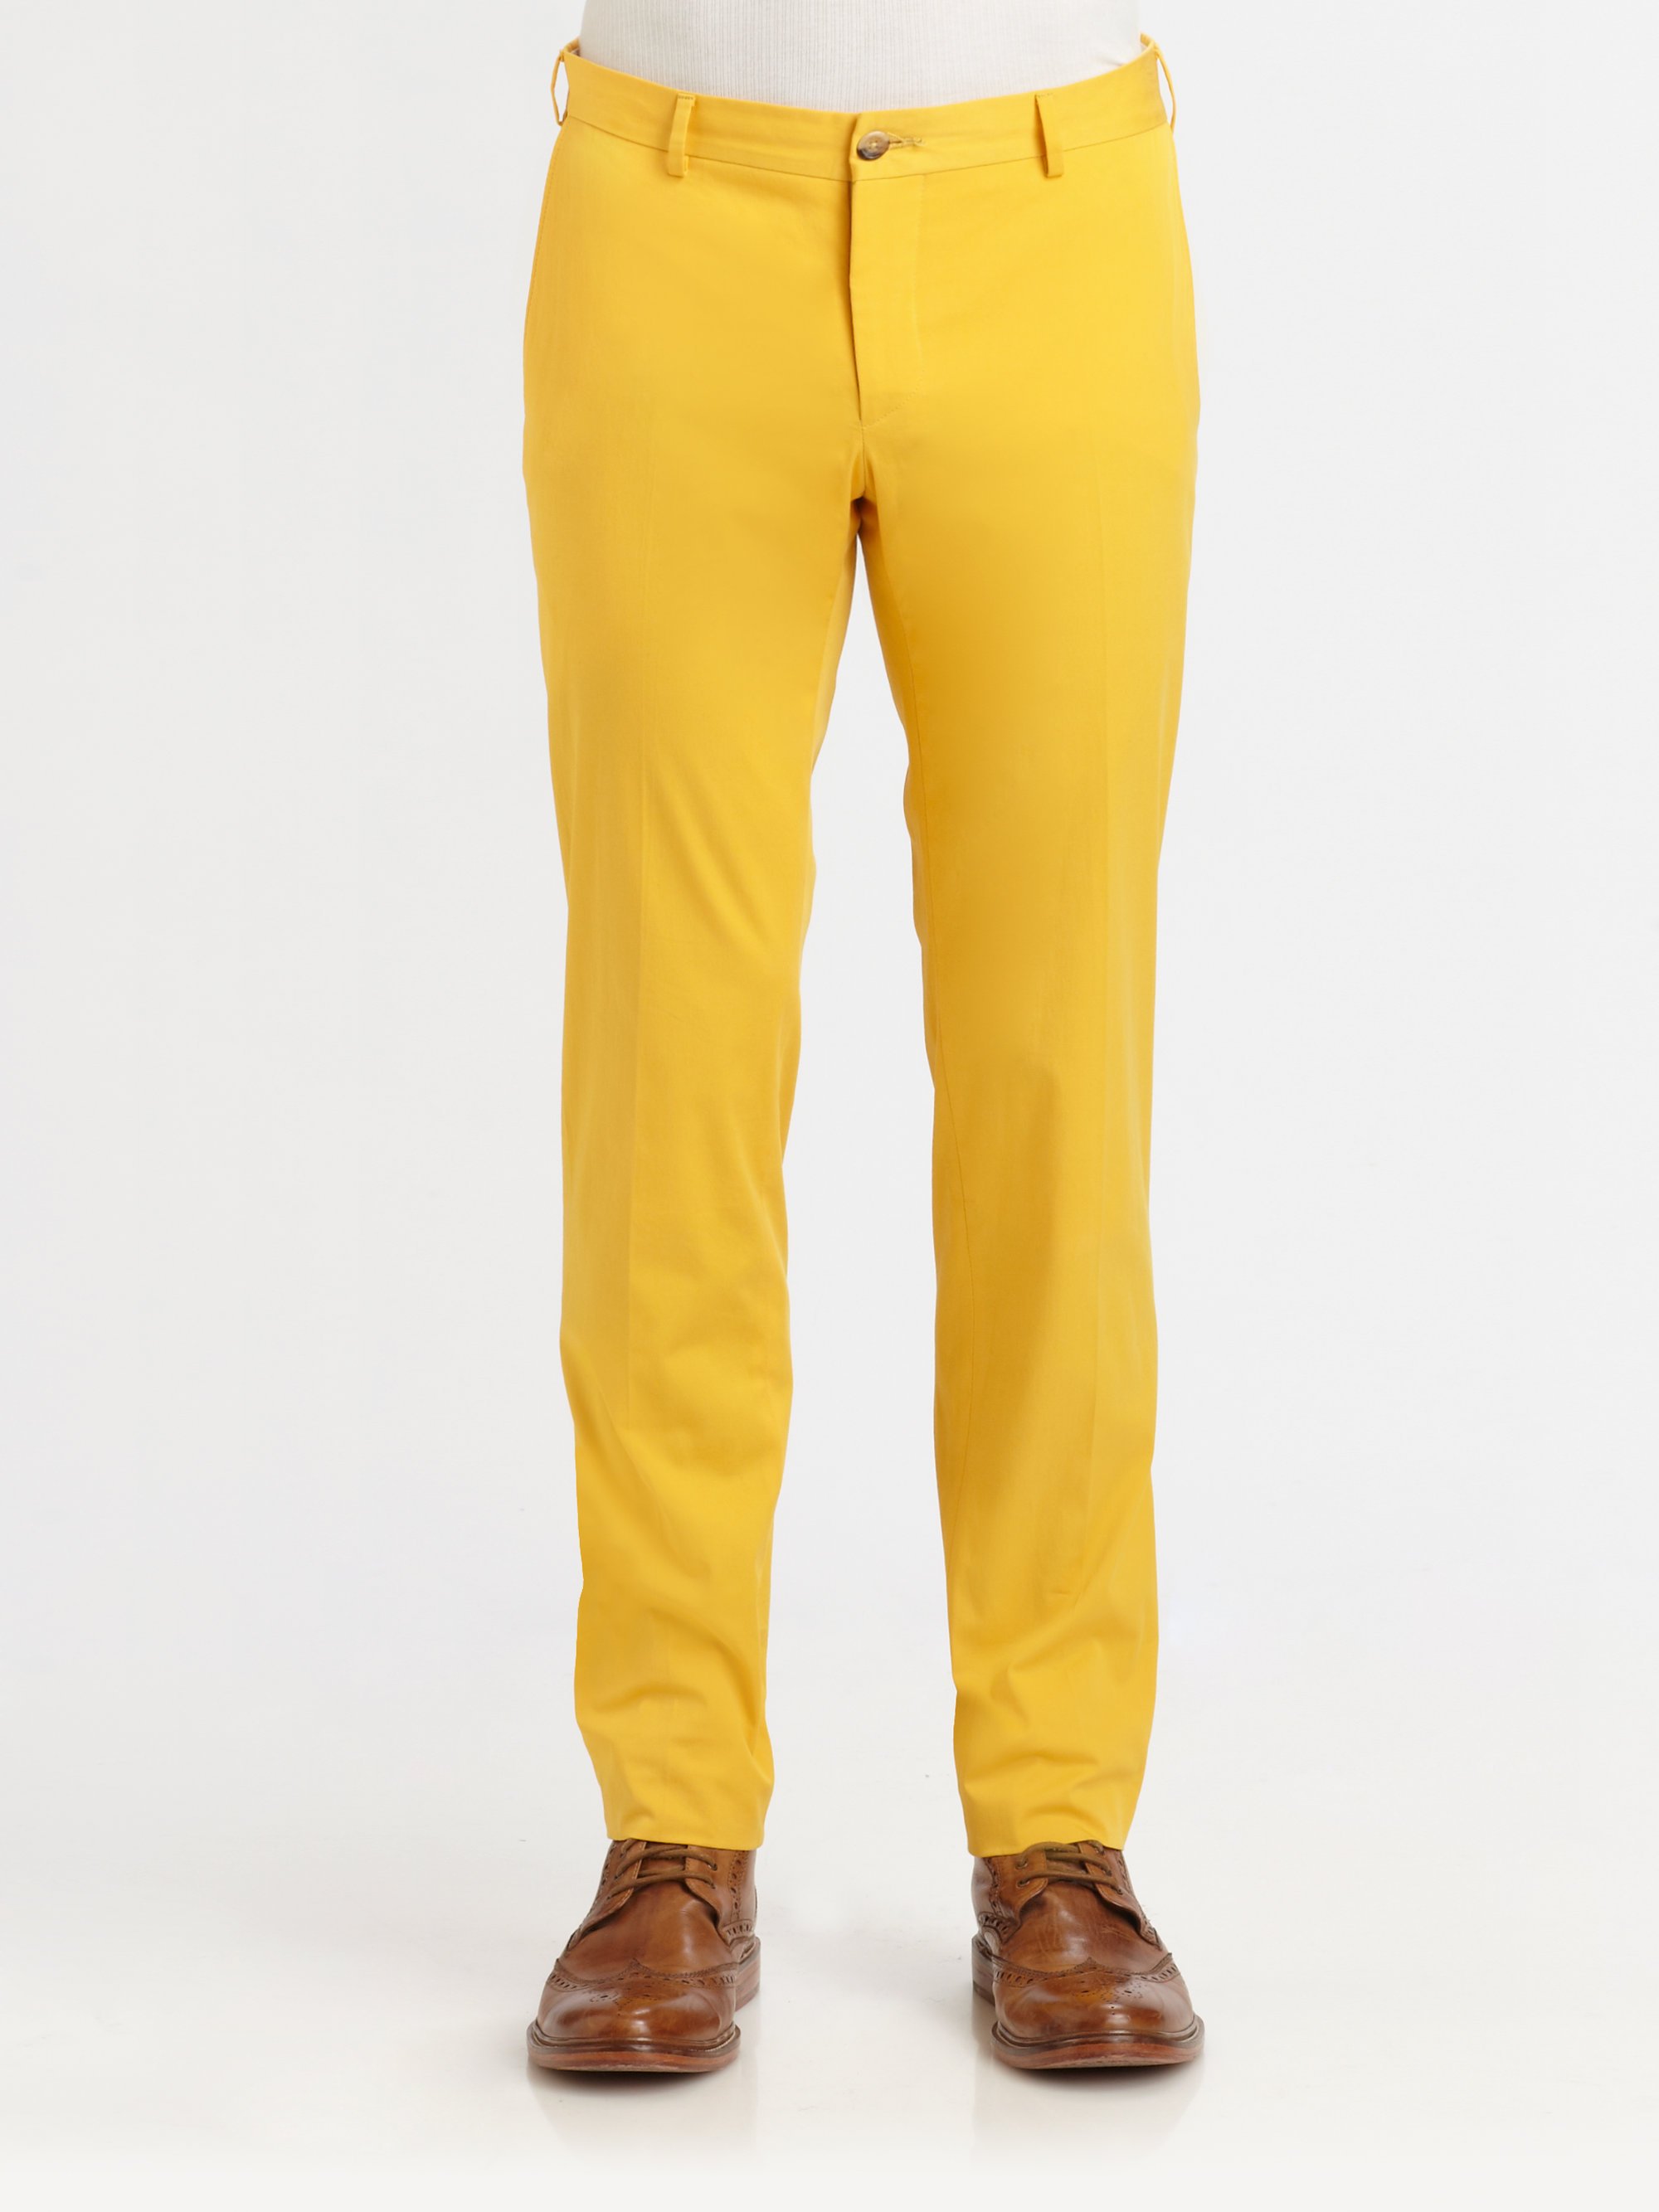 Игра желтые штаны. Желтые классические мужские брюки. Чиносы желтые. Желтые брюки подростковые для мальчика. Жёлтые брюки из хлопкп.